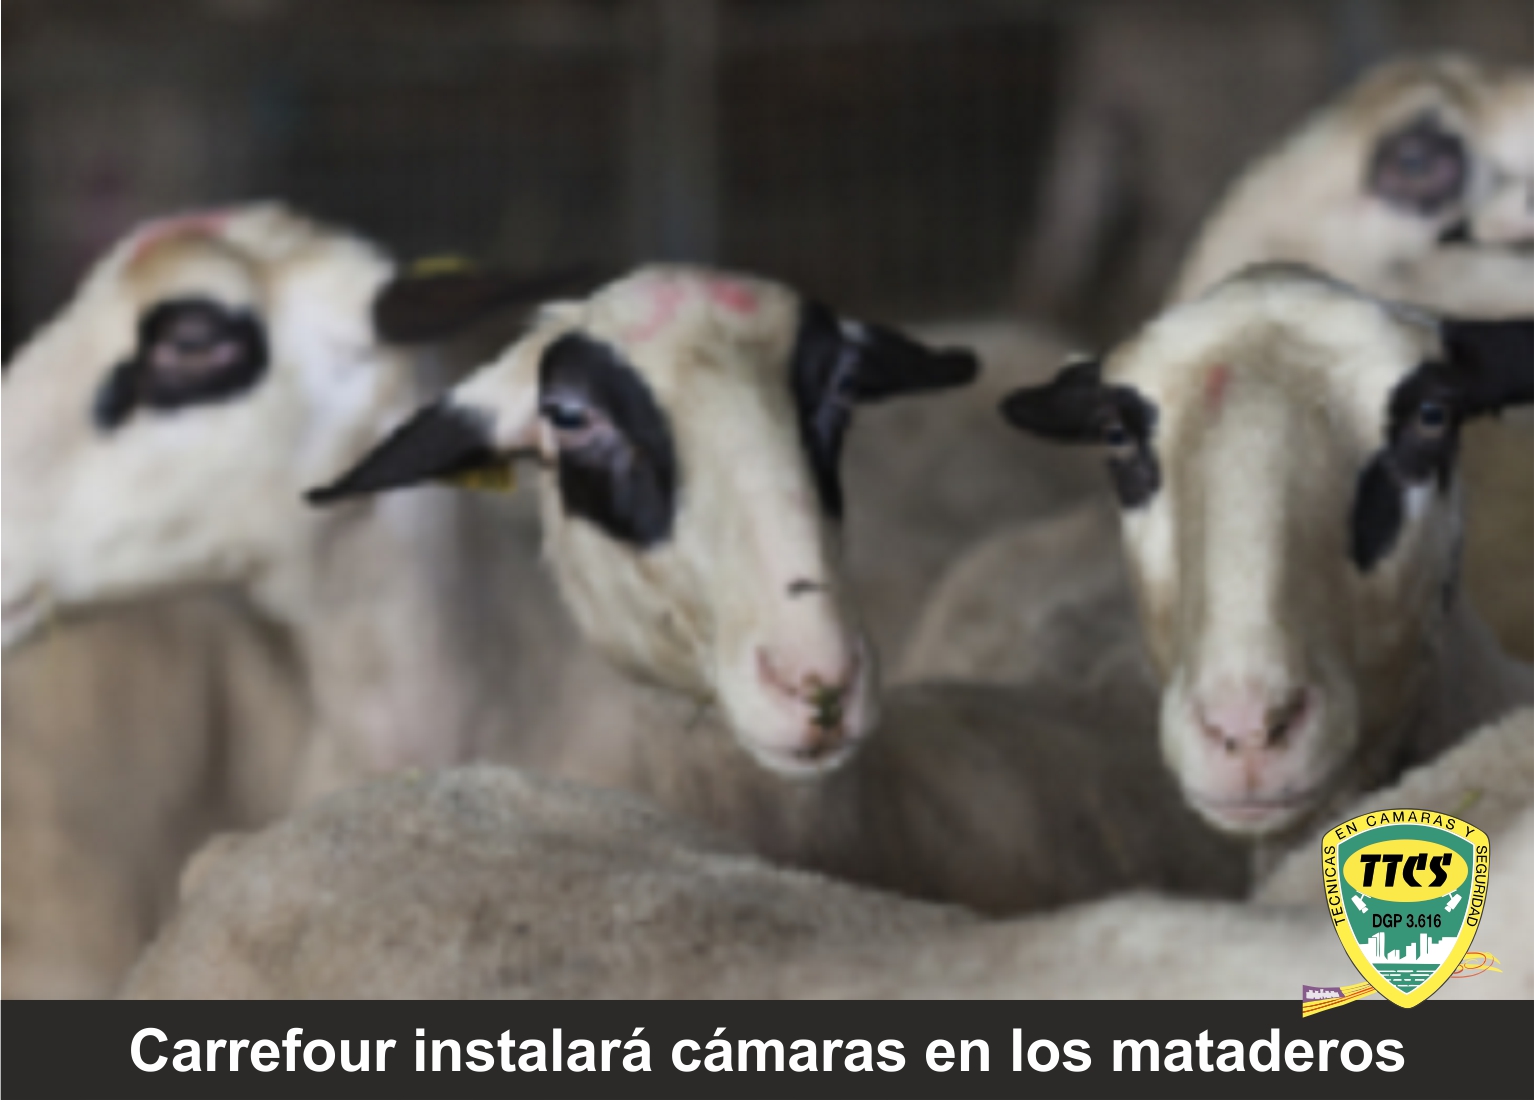 TTCS - Carrefour instalará cámaras en los mataderos